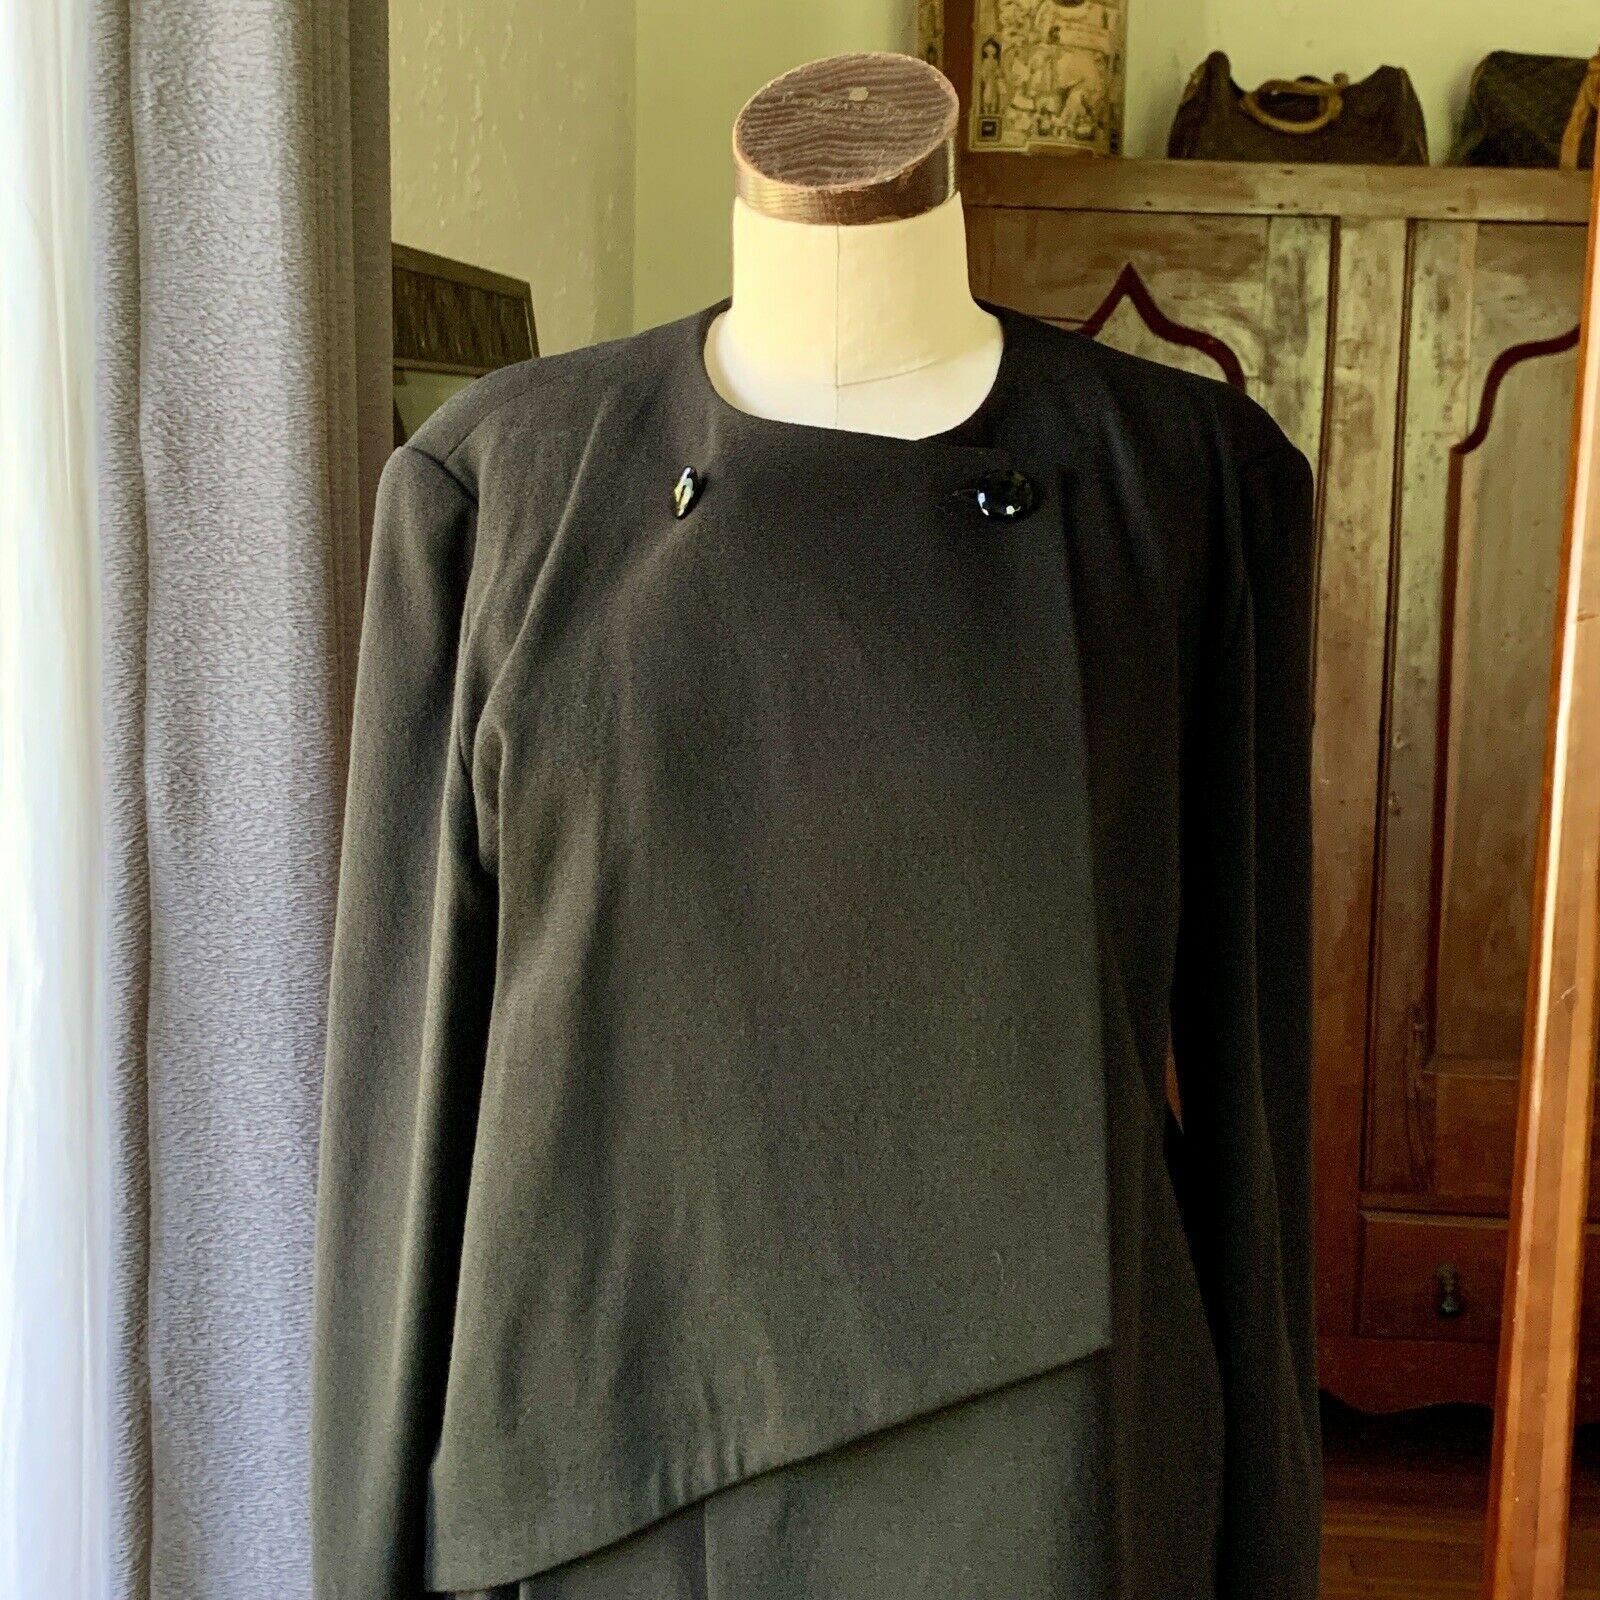 Pierre Cardin, 100% Laine, 1960's Couture, Made in France, Design asymétrique, Deux boutons à facettes, Jupe plissée, Fermeture éclair en métal, Fente au dos de la jupe, Vintage 38

Mesures à plat

Buste jusqu'à 22